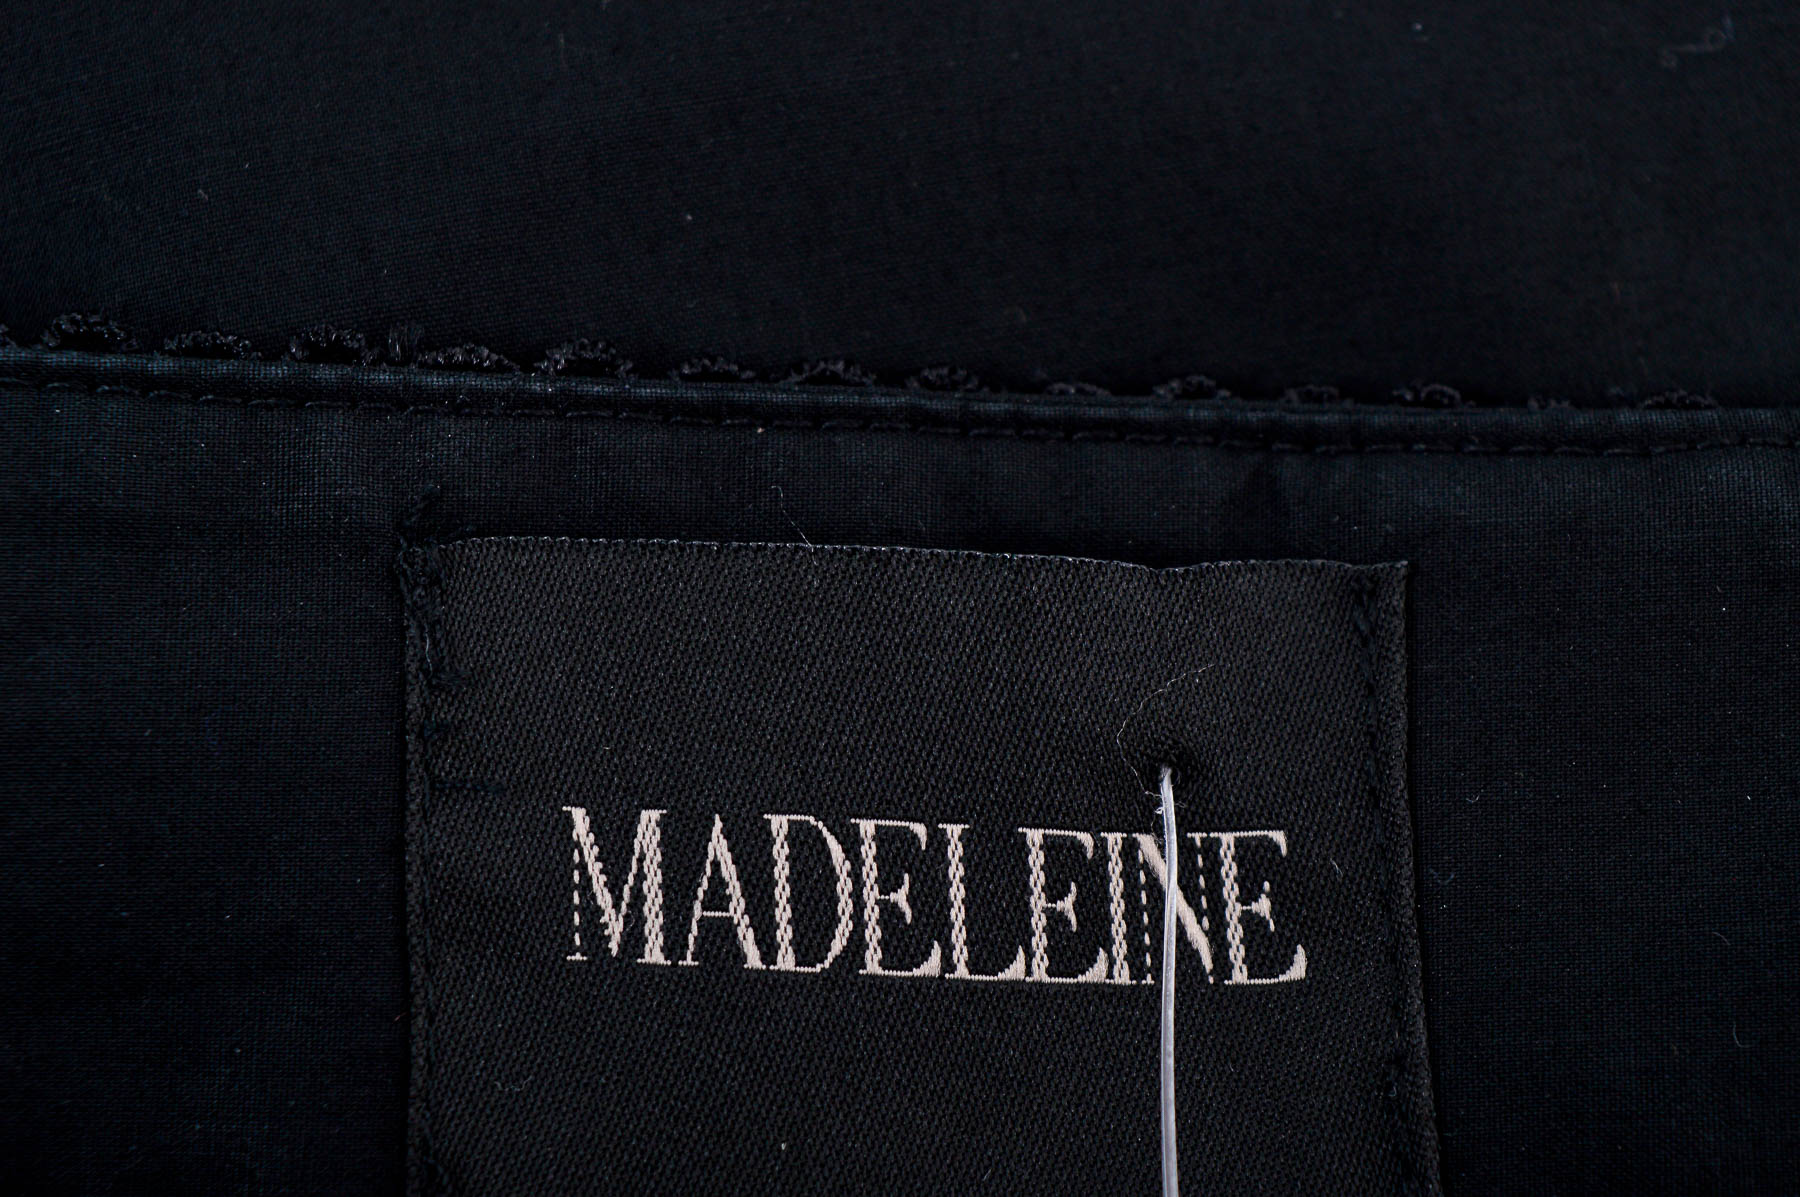 Spodnie damskie - MADELEINE - 2